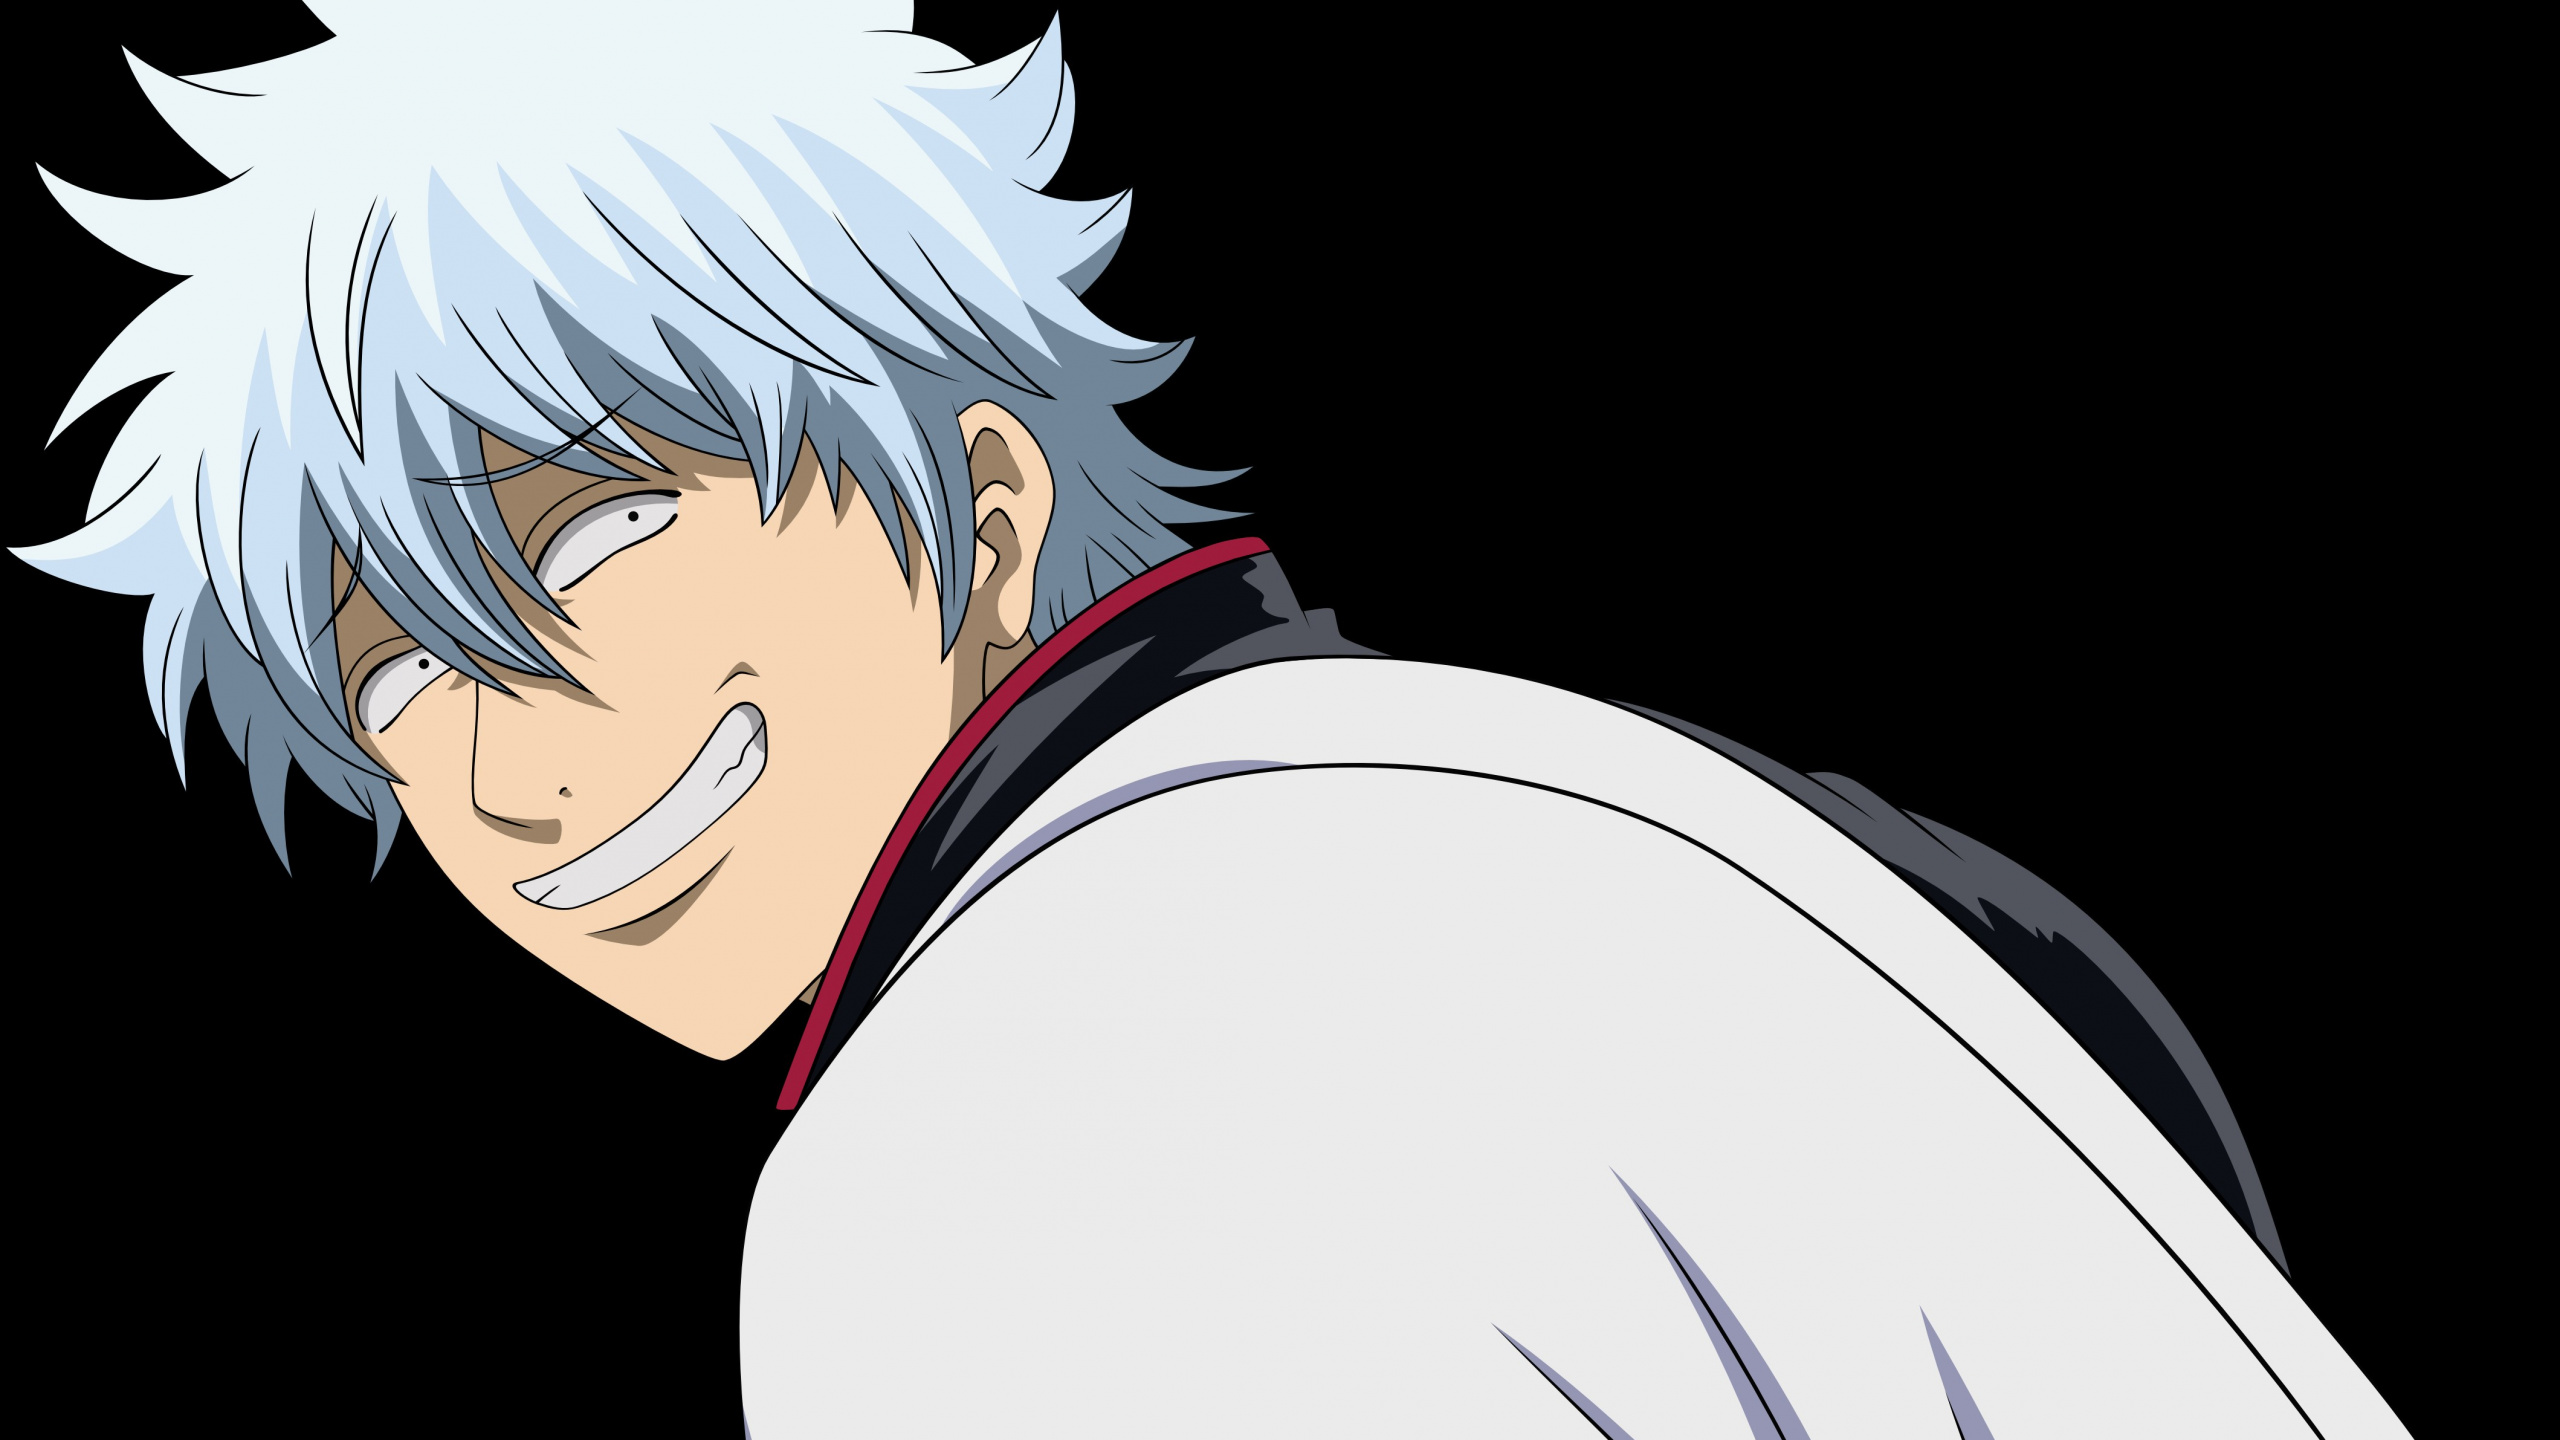 Personaje de Anime Masculino de Pelo Blanco. Wallpaper in 2560x1440 Resolution